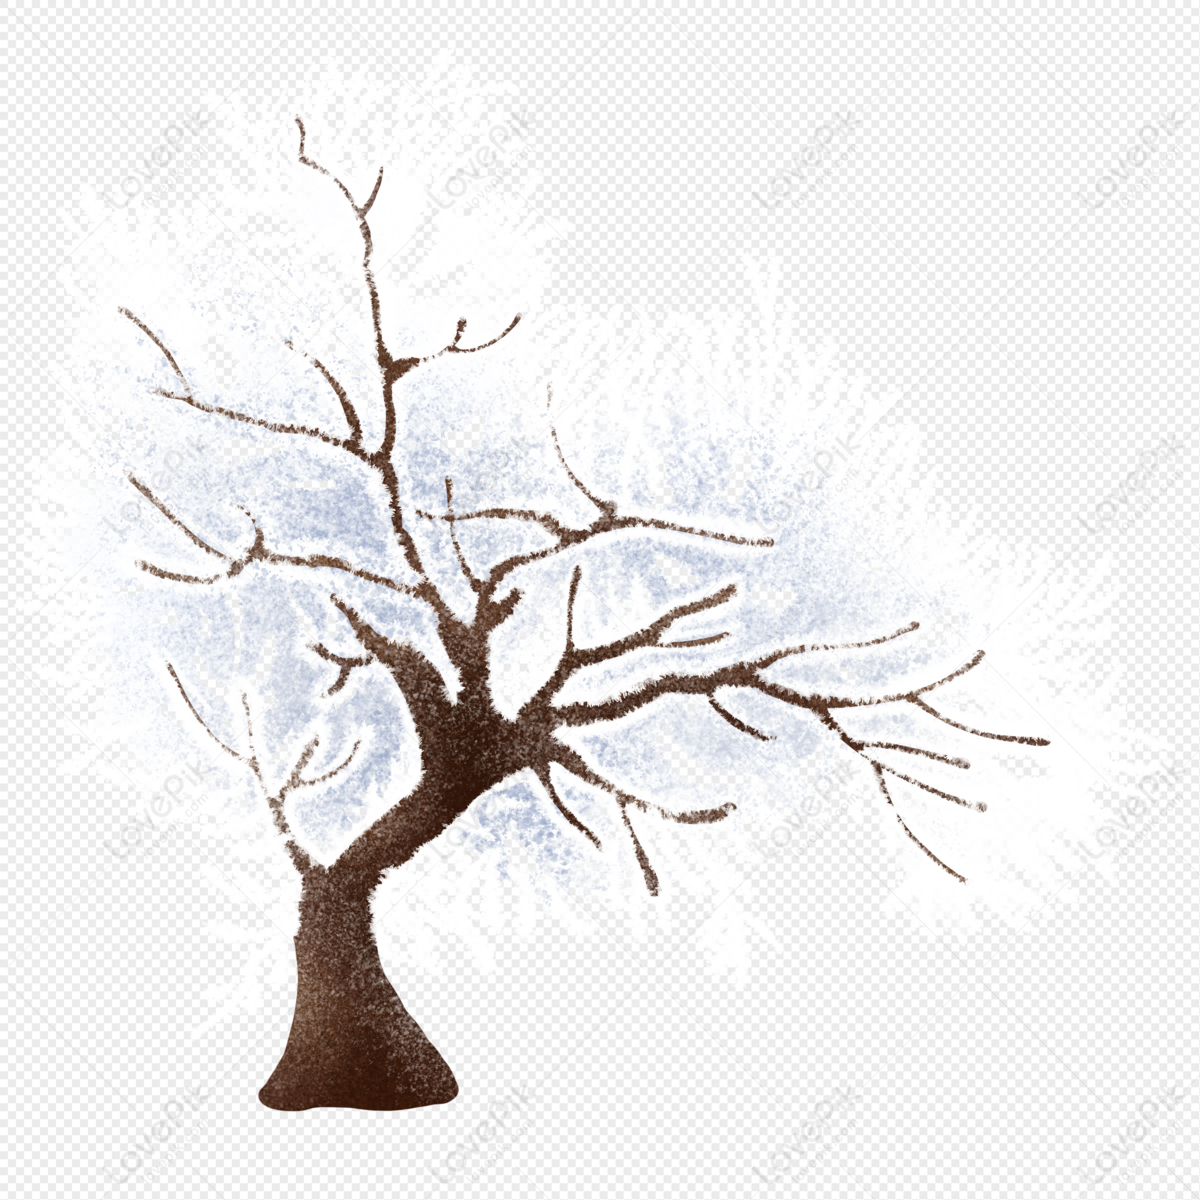 Lấy cảm hứng từ hình ảnh Frosted Dead Tree PNG cho thấy sự khác biệt độc đáo và mang đến cảm giác bí ẩn mê hoặc, thật đáng để chiêm ngưỡng.